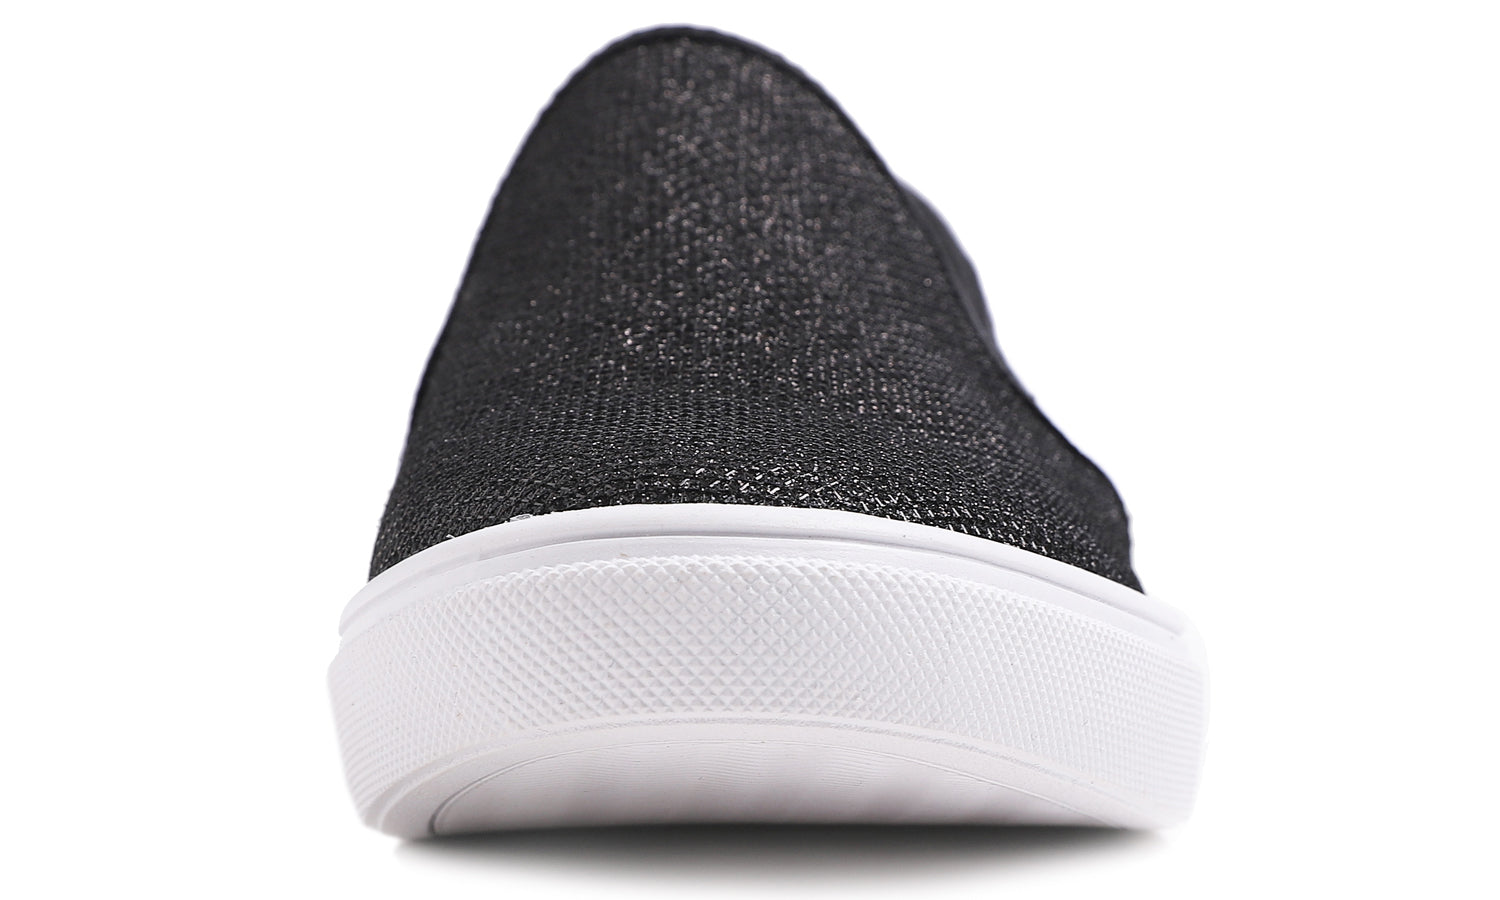 Feversole Women's Lurex Black Slip On Sneaker Casual Flat Loafers